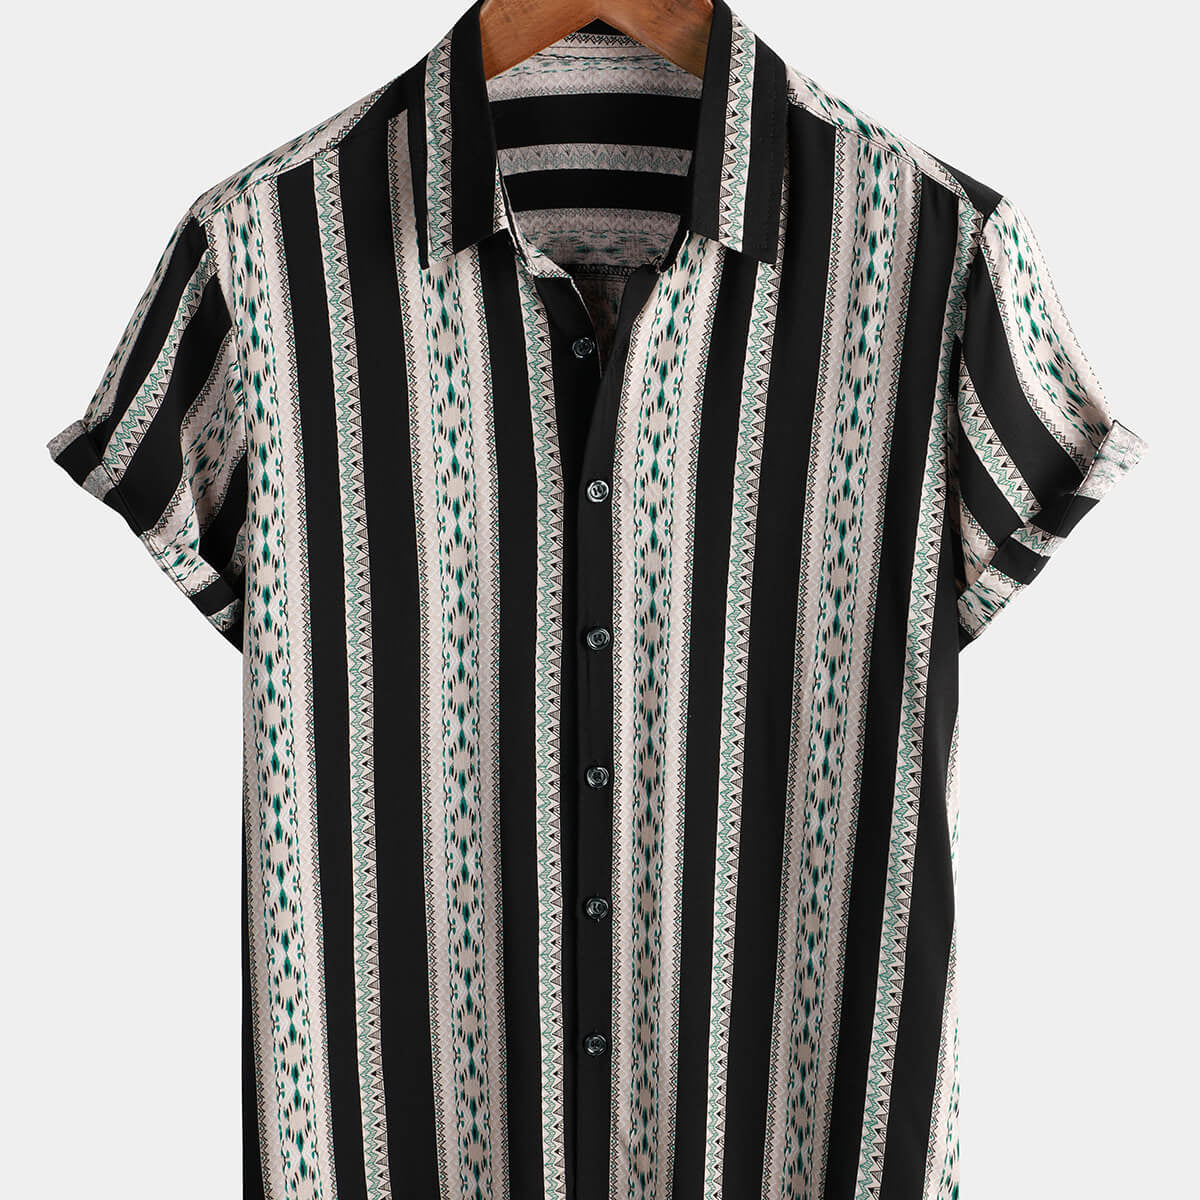 Camisa vintage con botones occidentales con estampado azteca de manga corta a rayas negras de los años 70 para hombre